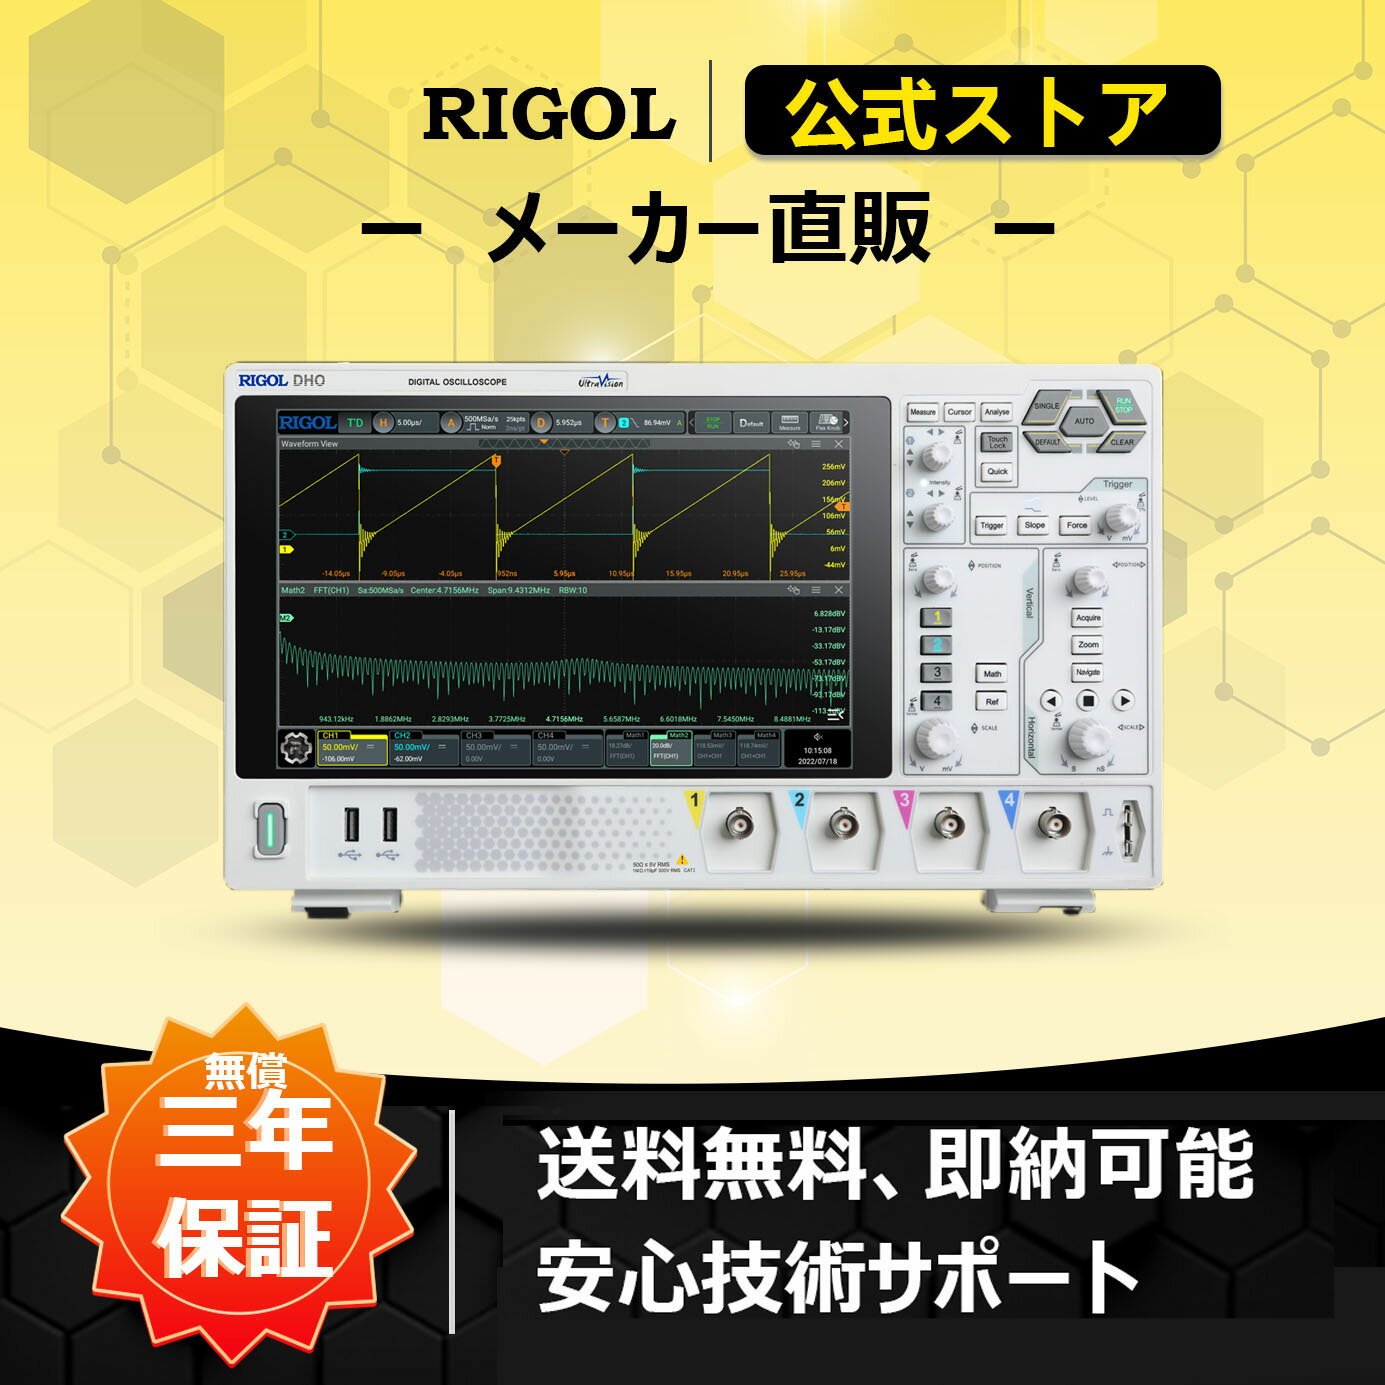 送料無料 RIGOL デジタル・オシロスコープ DHO1000シリーズ DHO1104 100MHz周波数帯 4チャンネル 12bit高解像度 2GSa/sリアルタイムサンプルレート 100Mpts(opt.)最大メモリ長 1,500,000wfms/s波形取り込みレート 10V/Div垂直軸レンジ